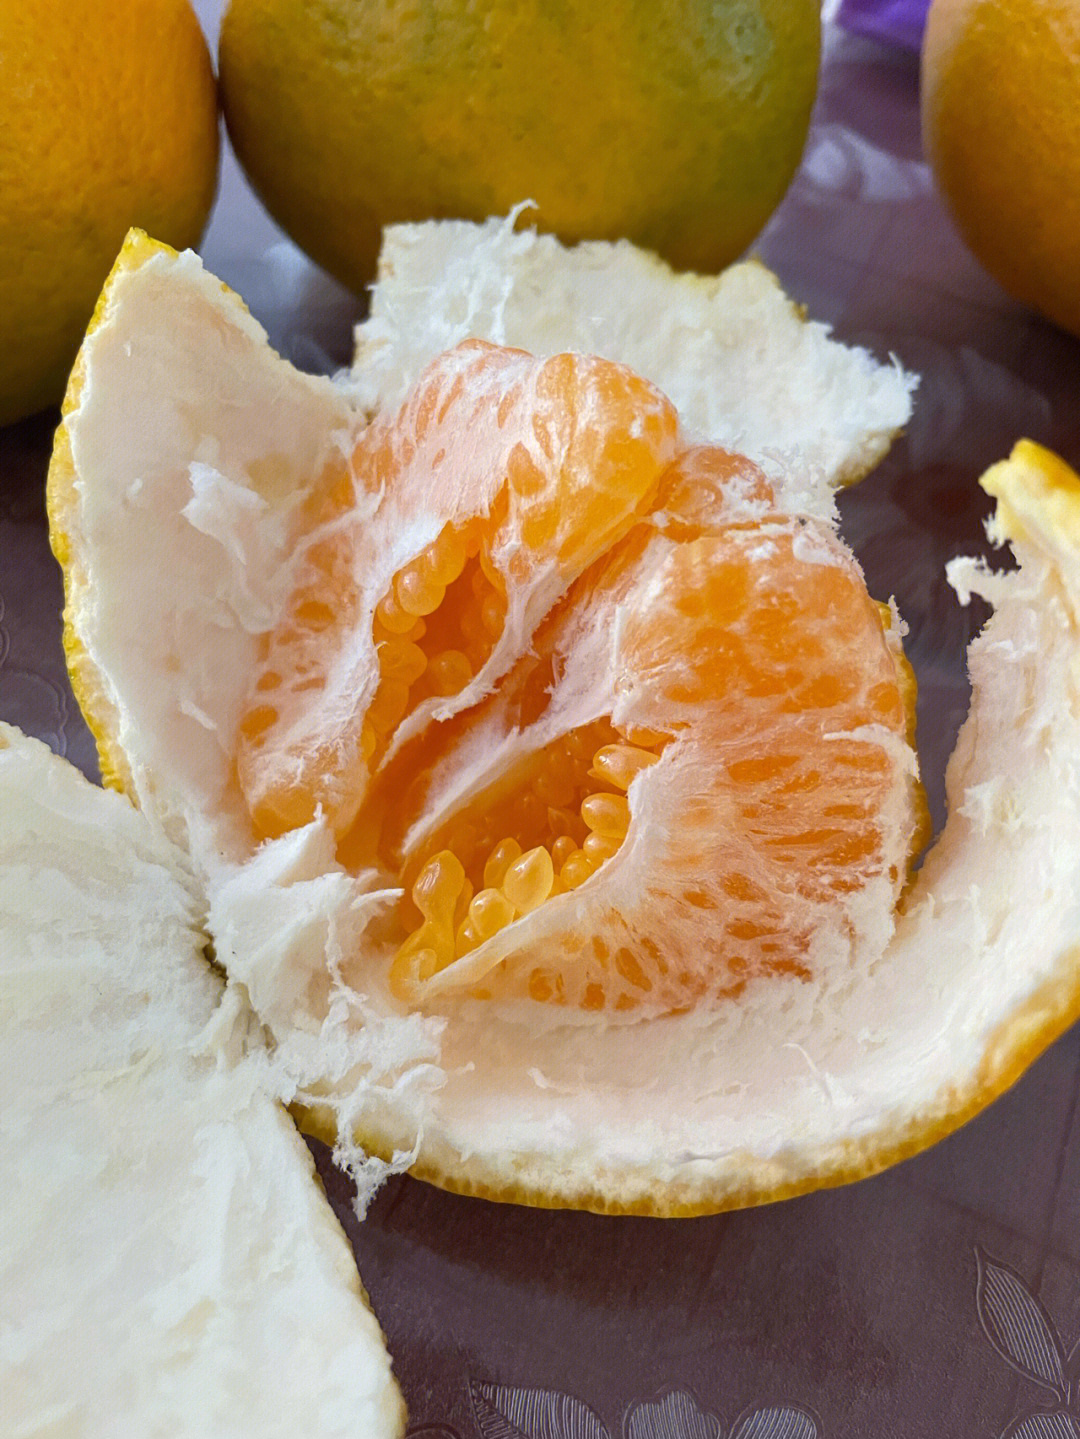 丑橘与粑粑柑的图片图片